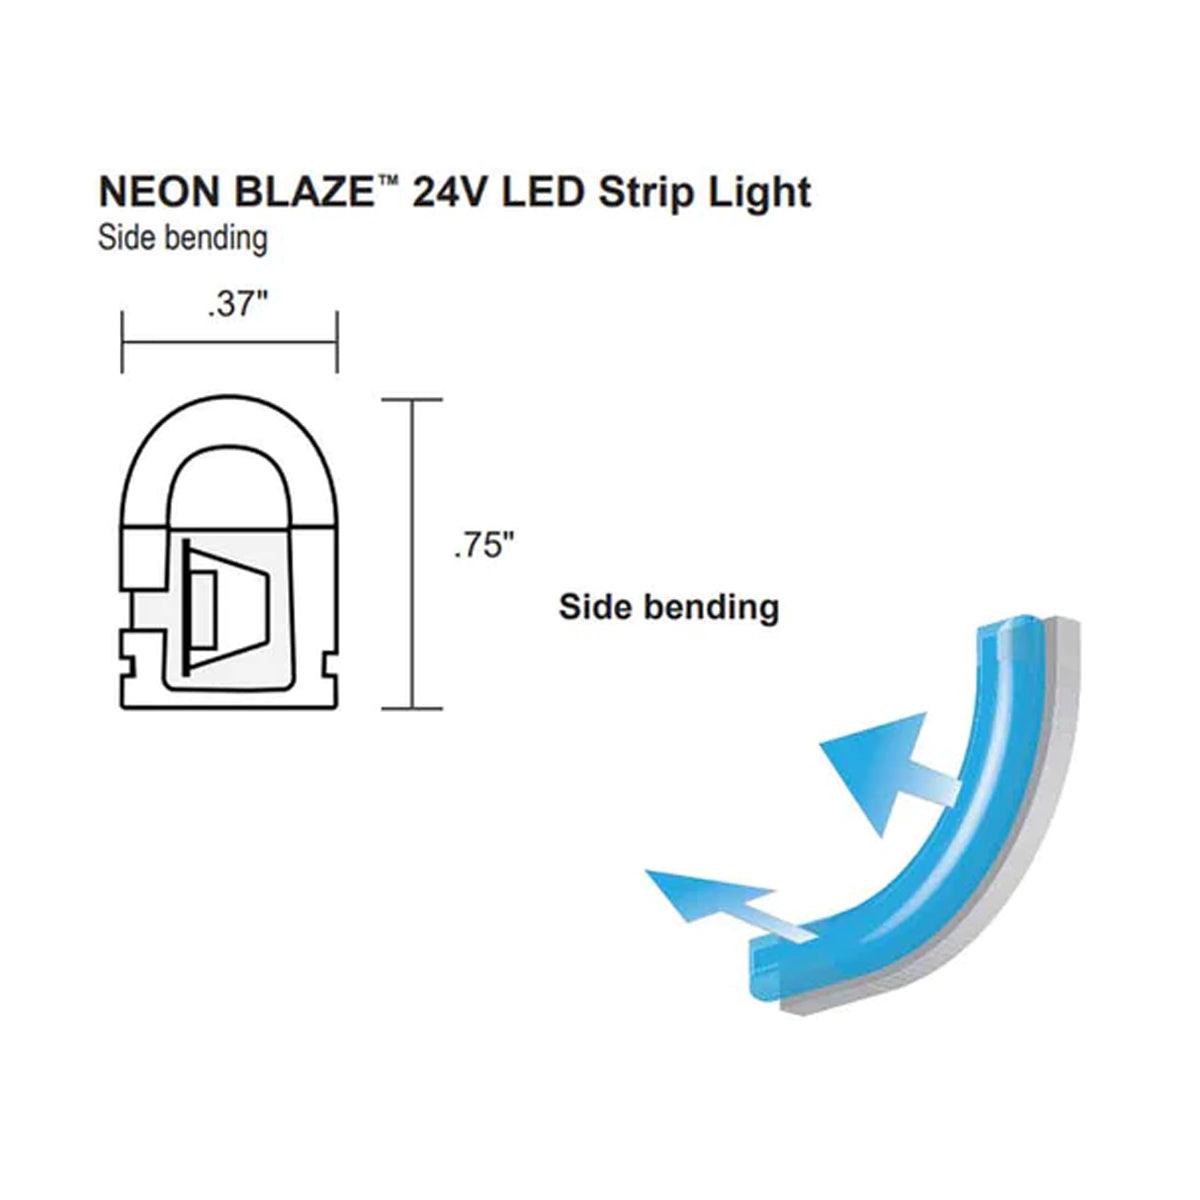 Neon BLAZE LED Neon Strip Light, Green, 24V, Side Bending - Bees Lighting